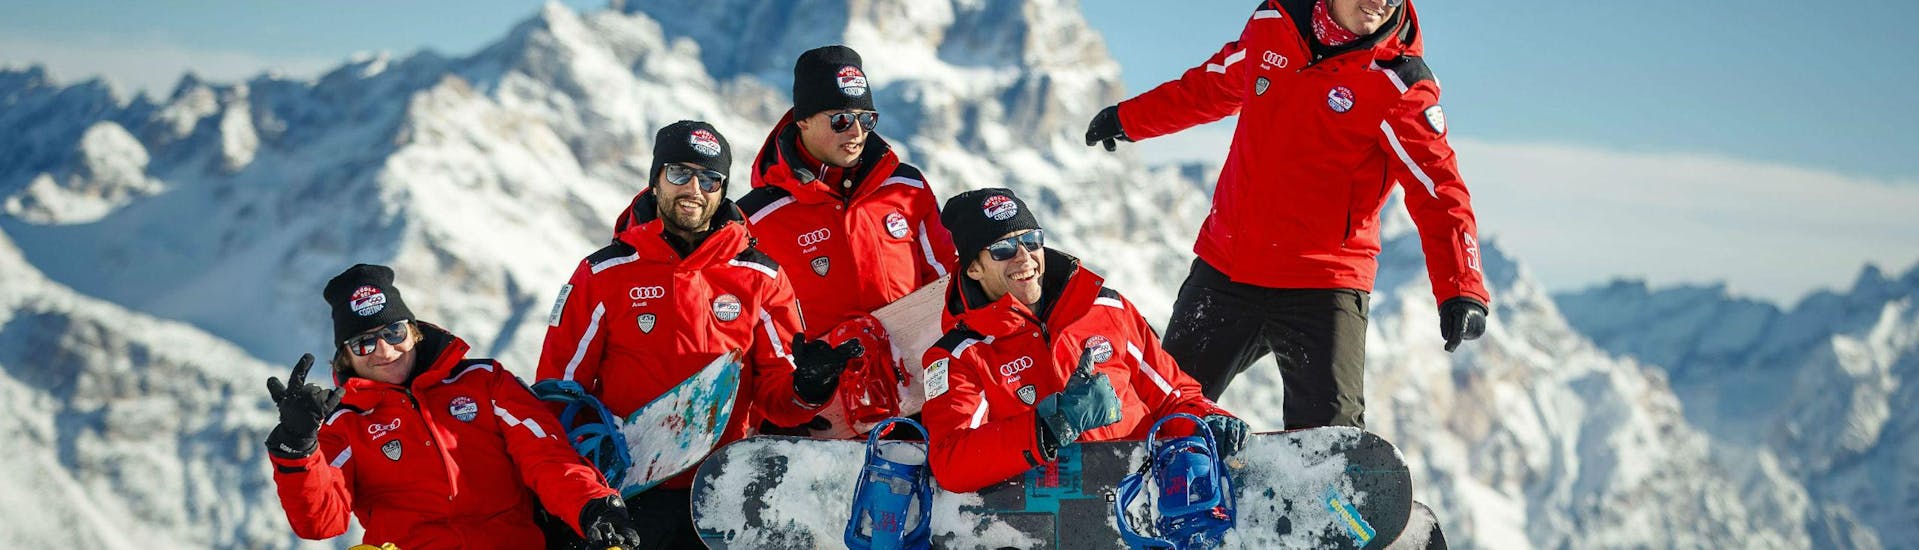 Een groep snowboardleraren van de skischool Scuola Sci Cortina vermaakt zich in de sneeuw tijdens een van hun snowboardlessen voor kinderen en volwassenen - alle niveaus in het skigebied van Cortina d'Ampezzo.